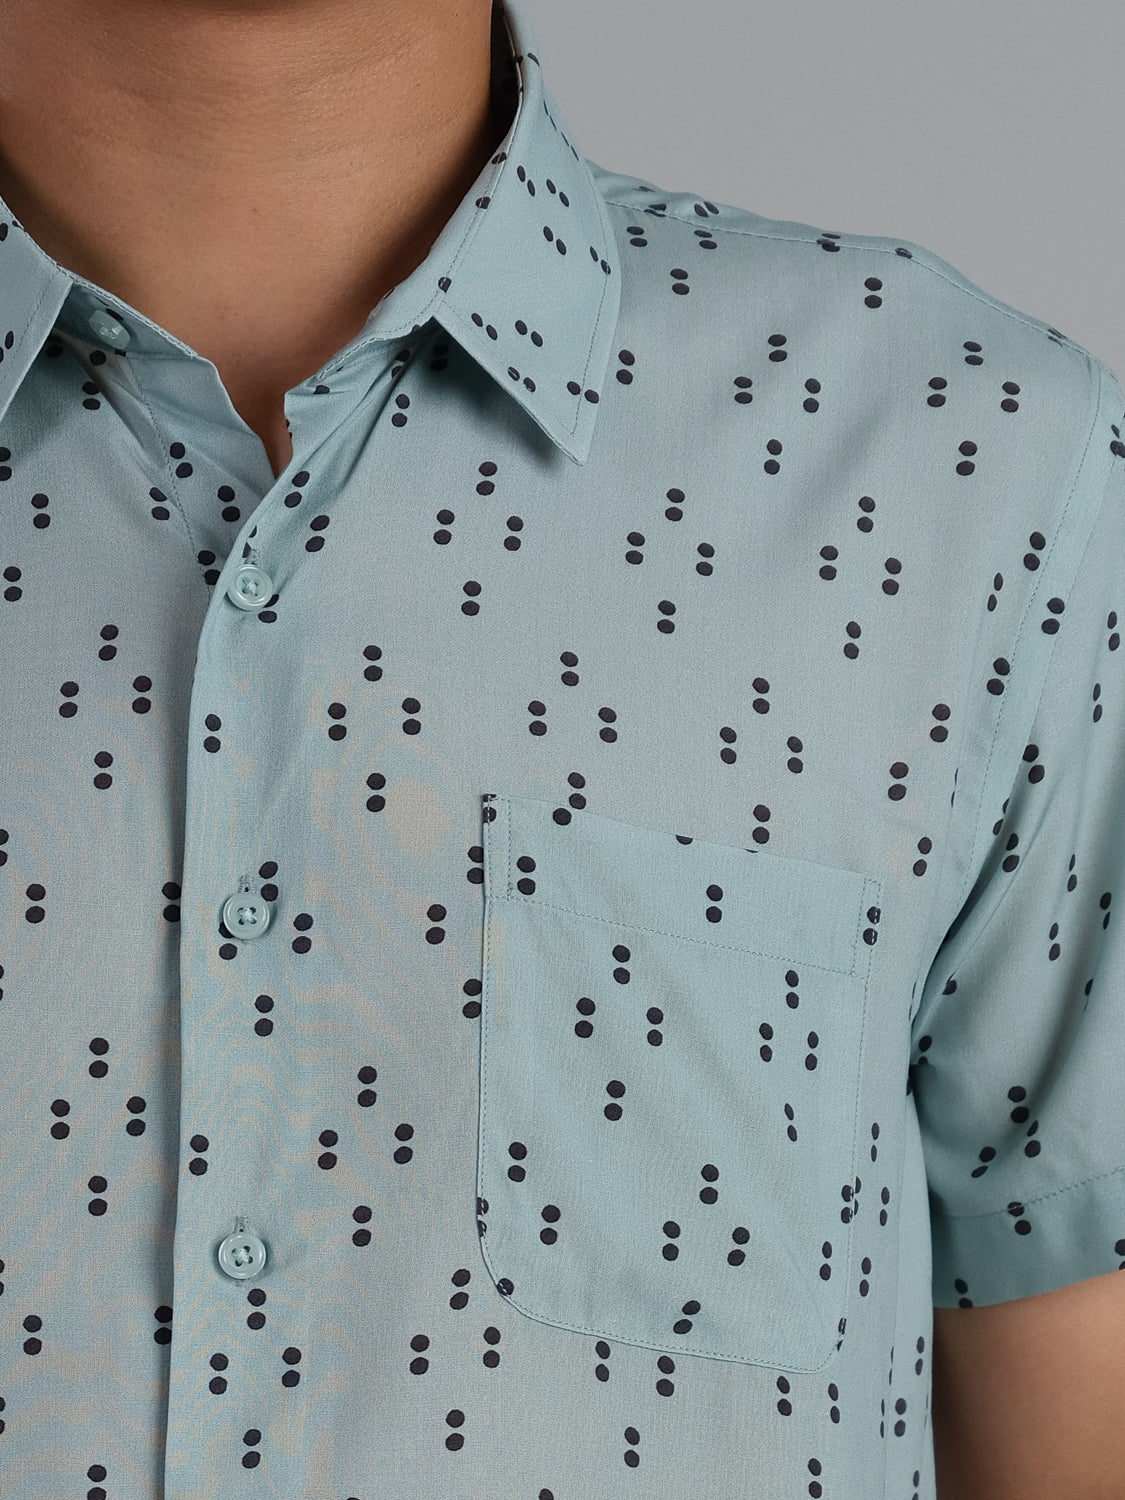 Polka Short Sleeve Printed Rayon Shirt